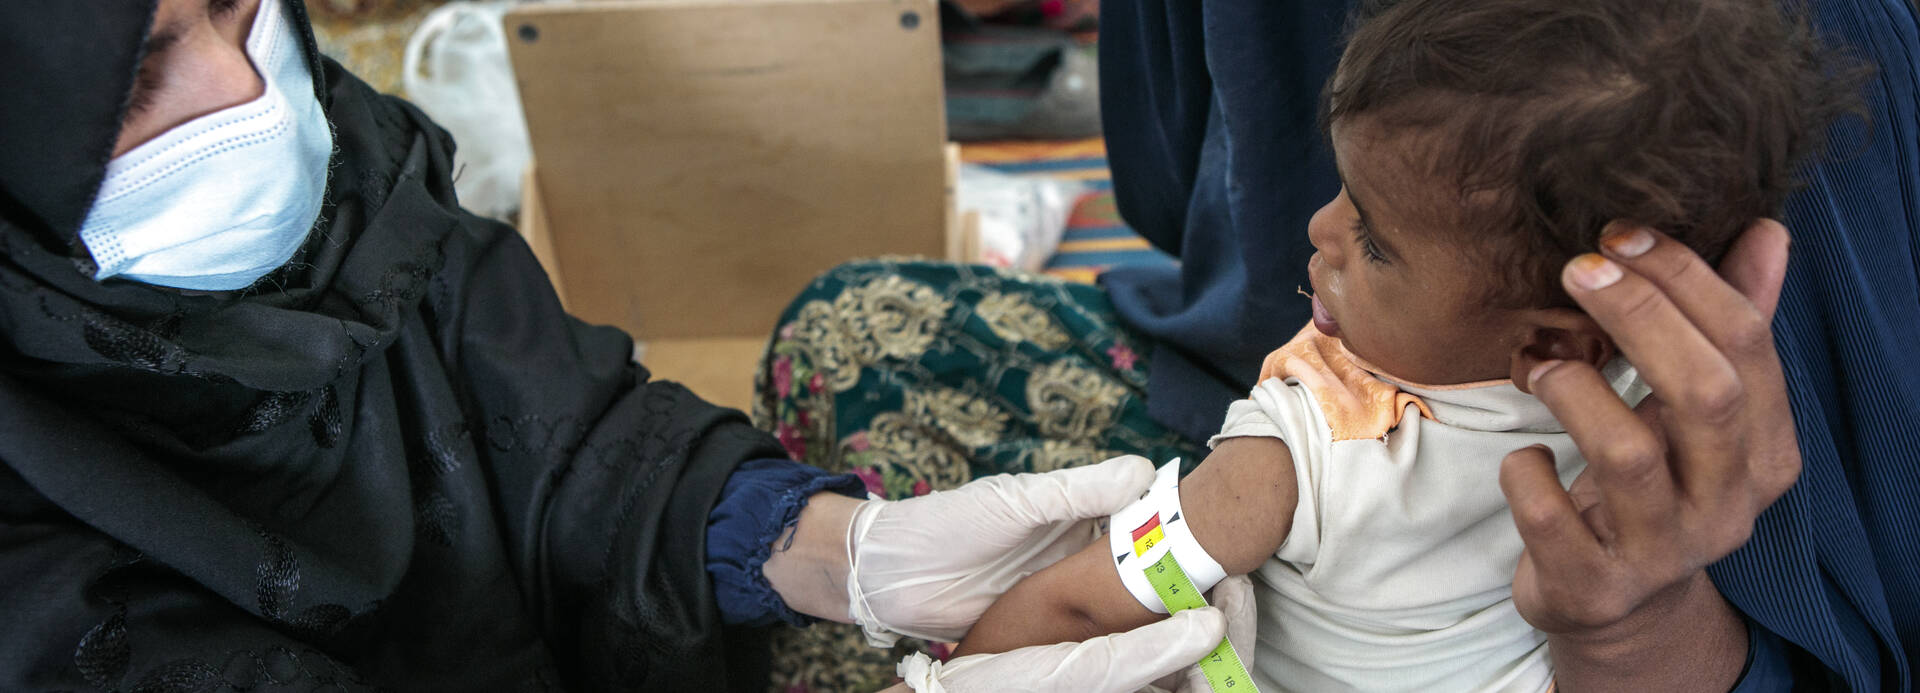 Eine Gesundheitsmitarbeiterin von Aktion gegen den Hunger misst einem Kind in den Armen der Mutter mit einem MUAC-Band den Armumfang.